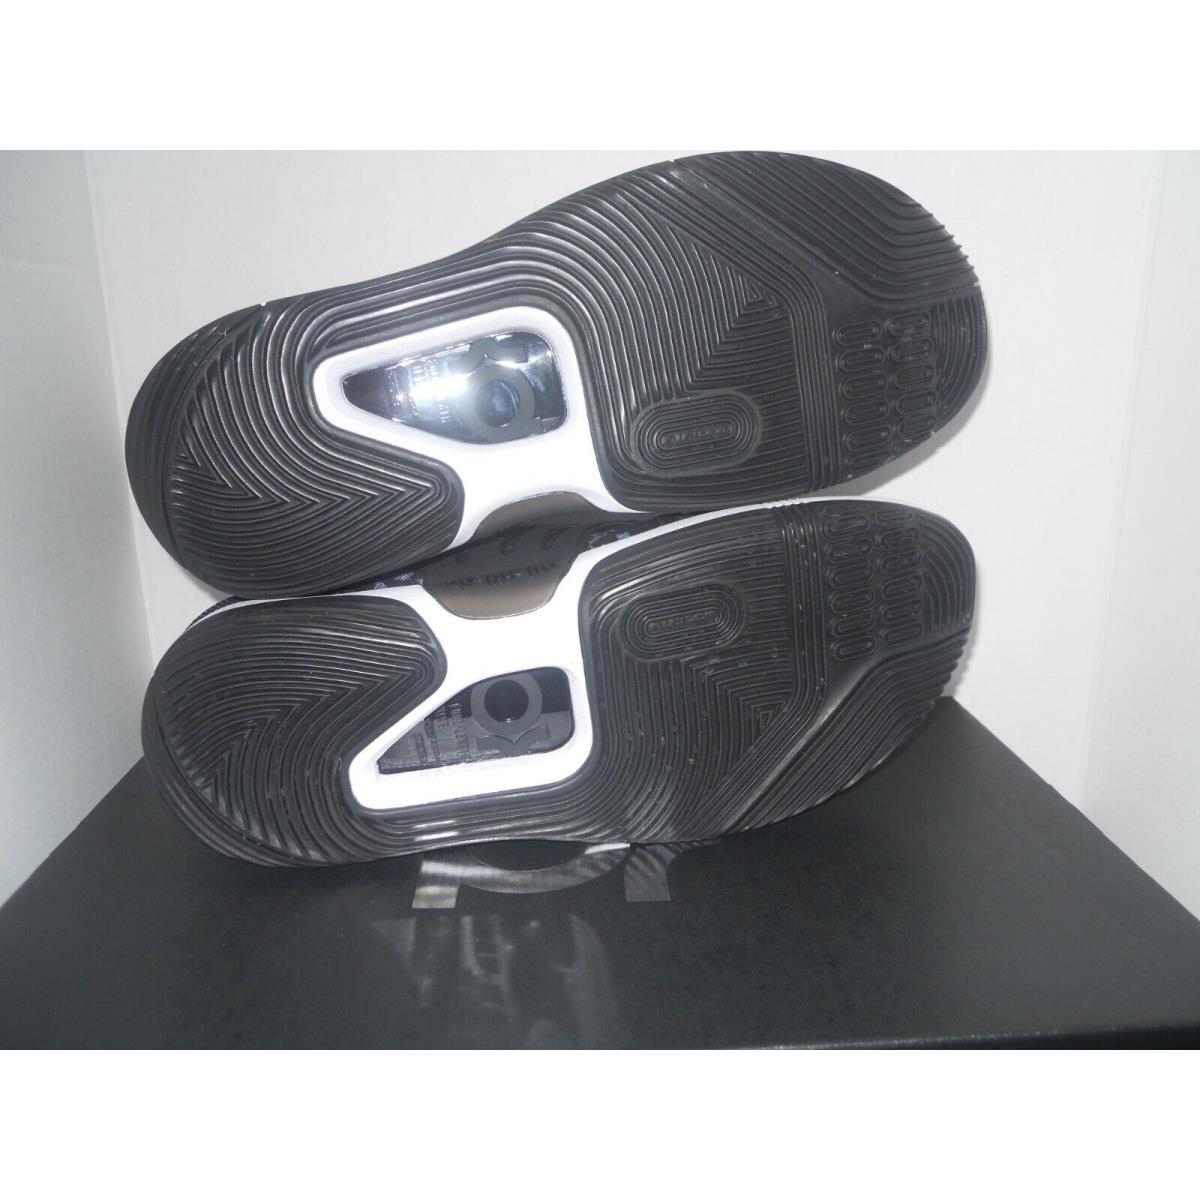 Nike shoes PROMO - Black 4